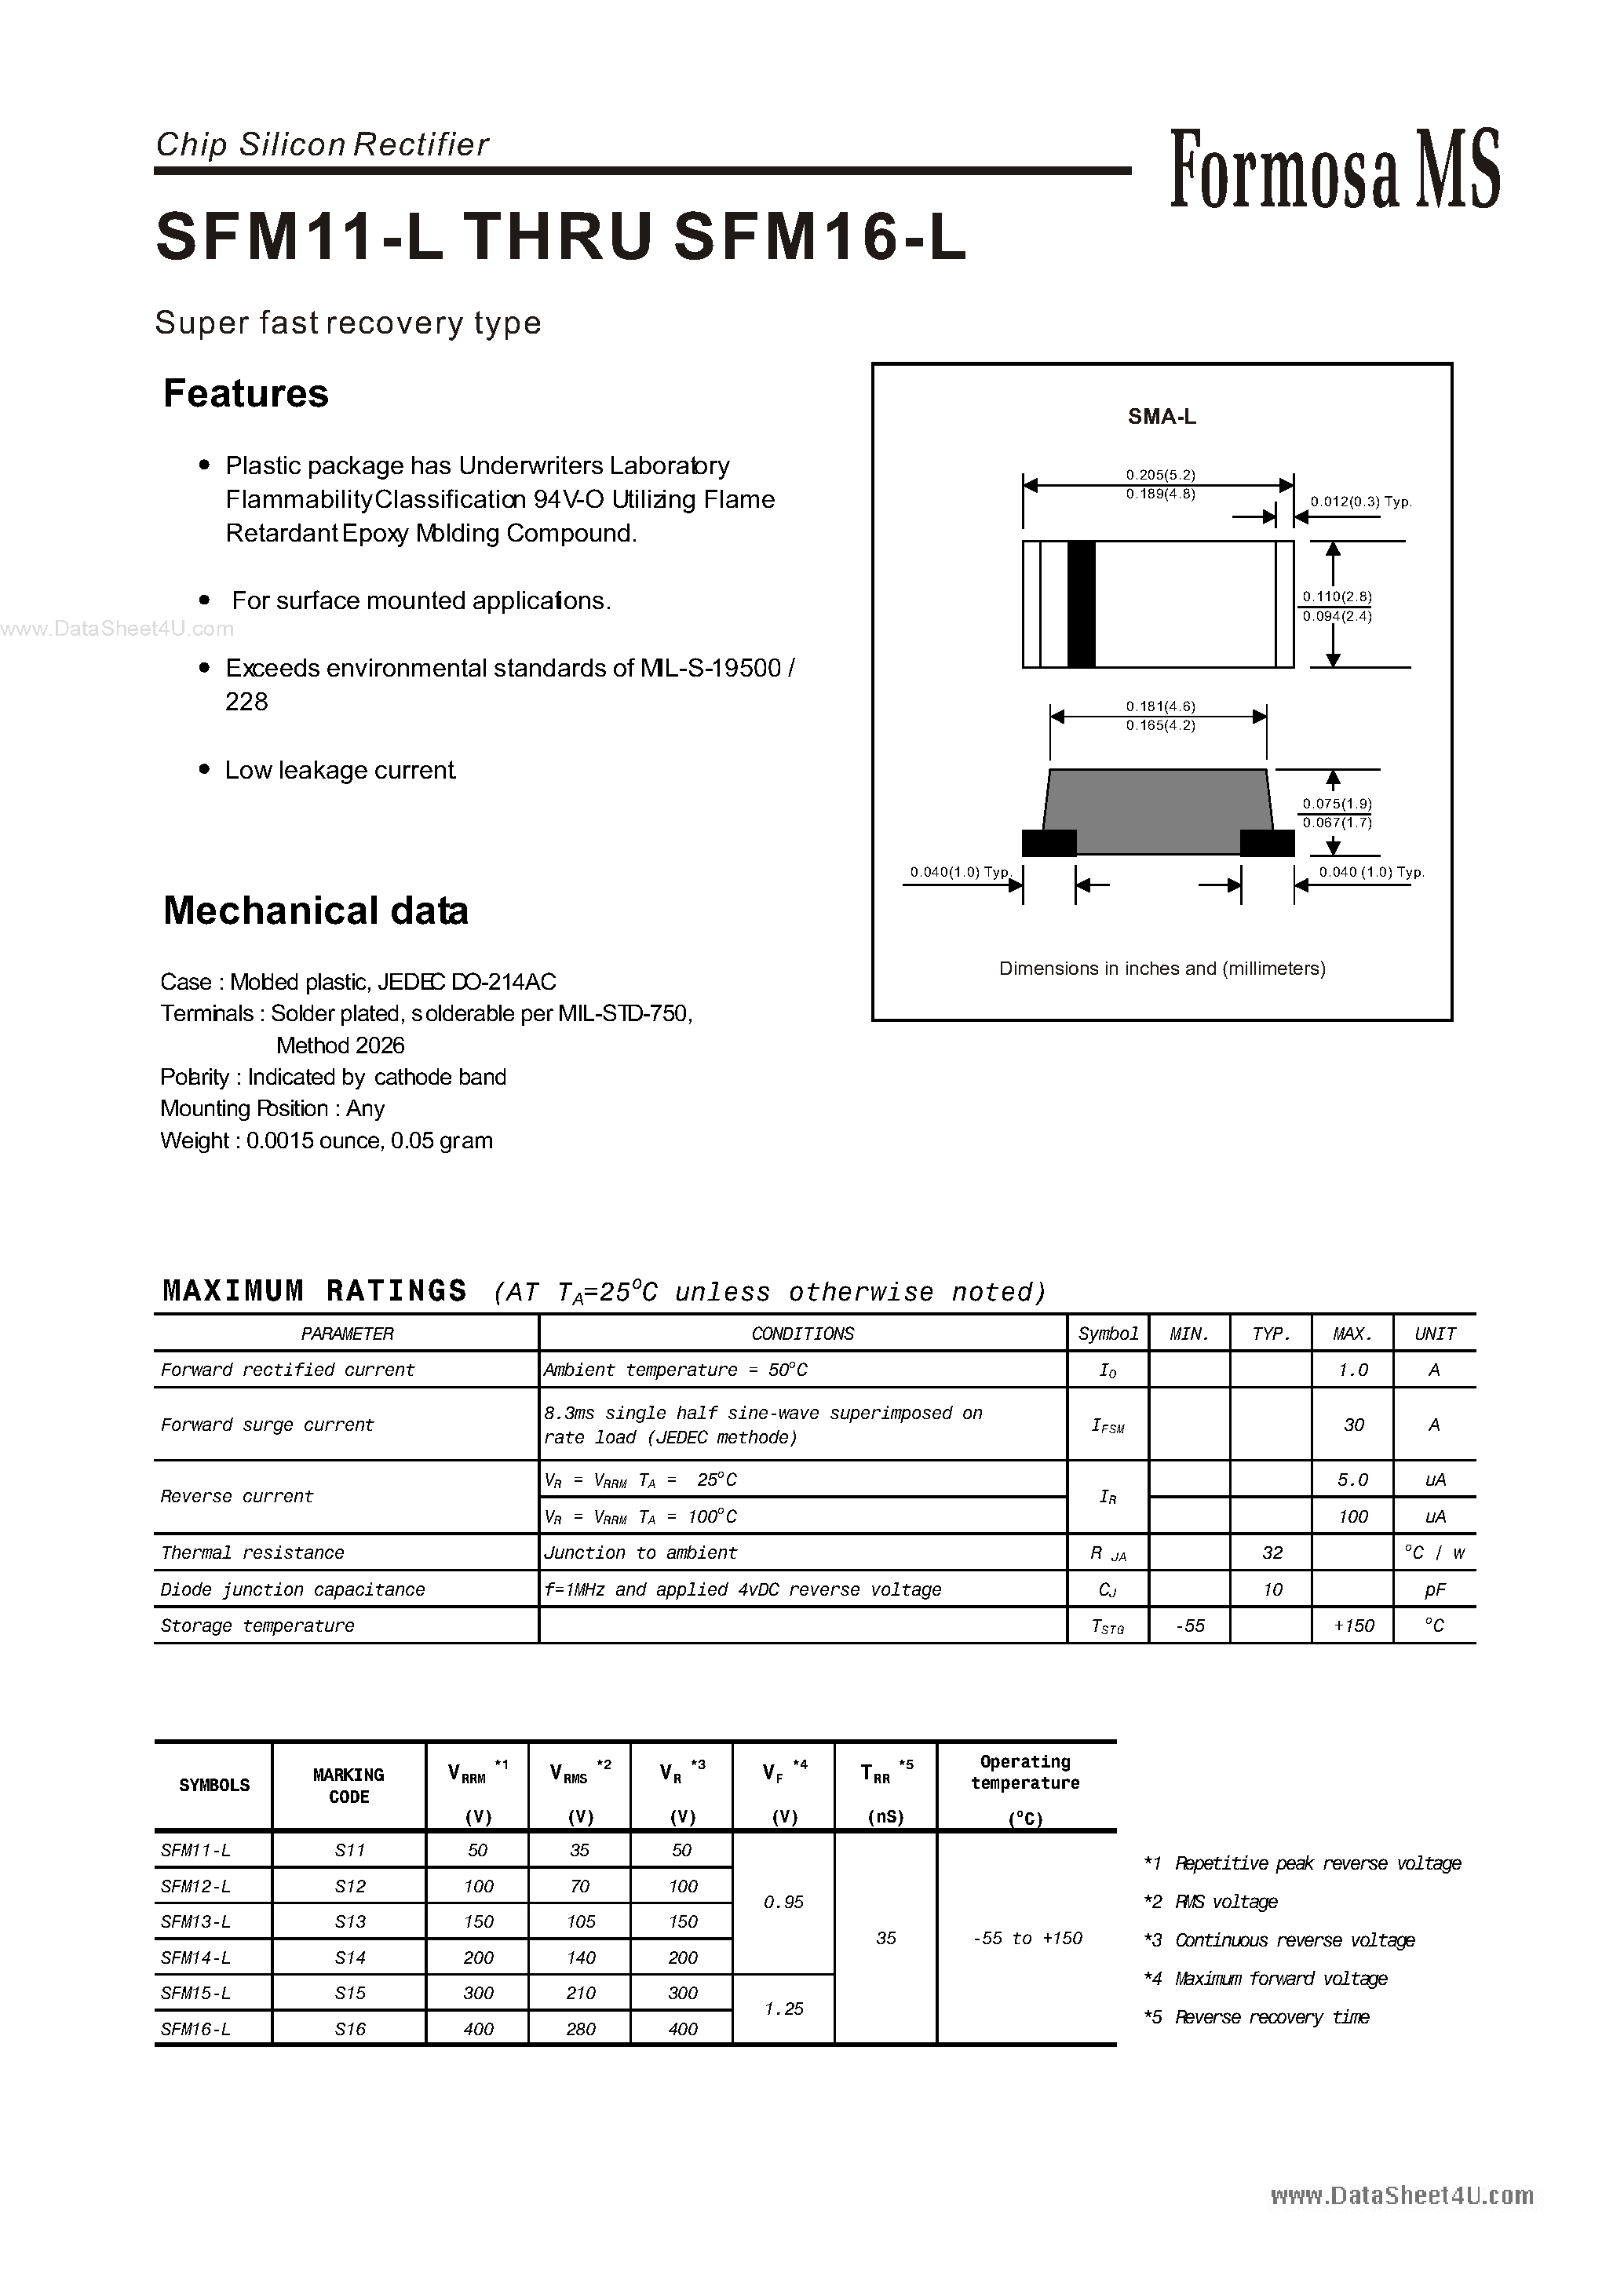 Datasheet SFM11-L - (SFM11-L - SFM16-L) Chip Silicon Rectifier page 1